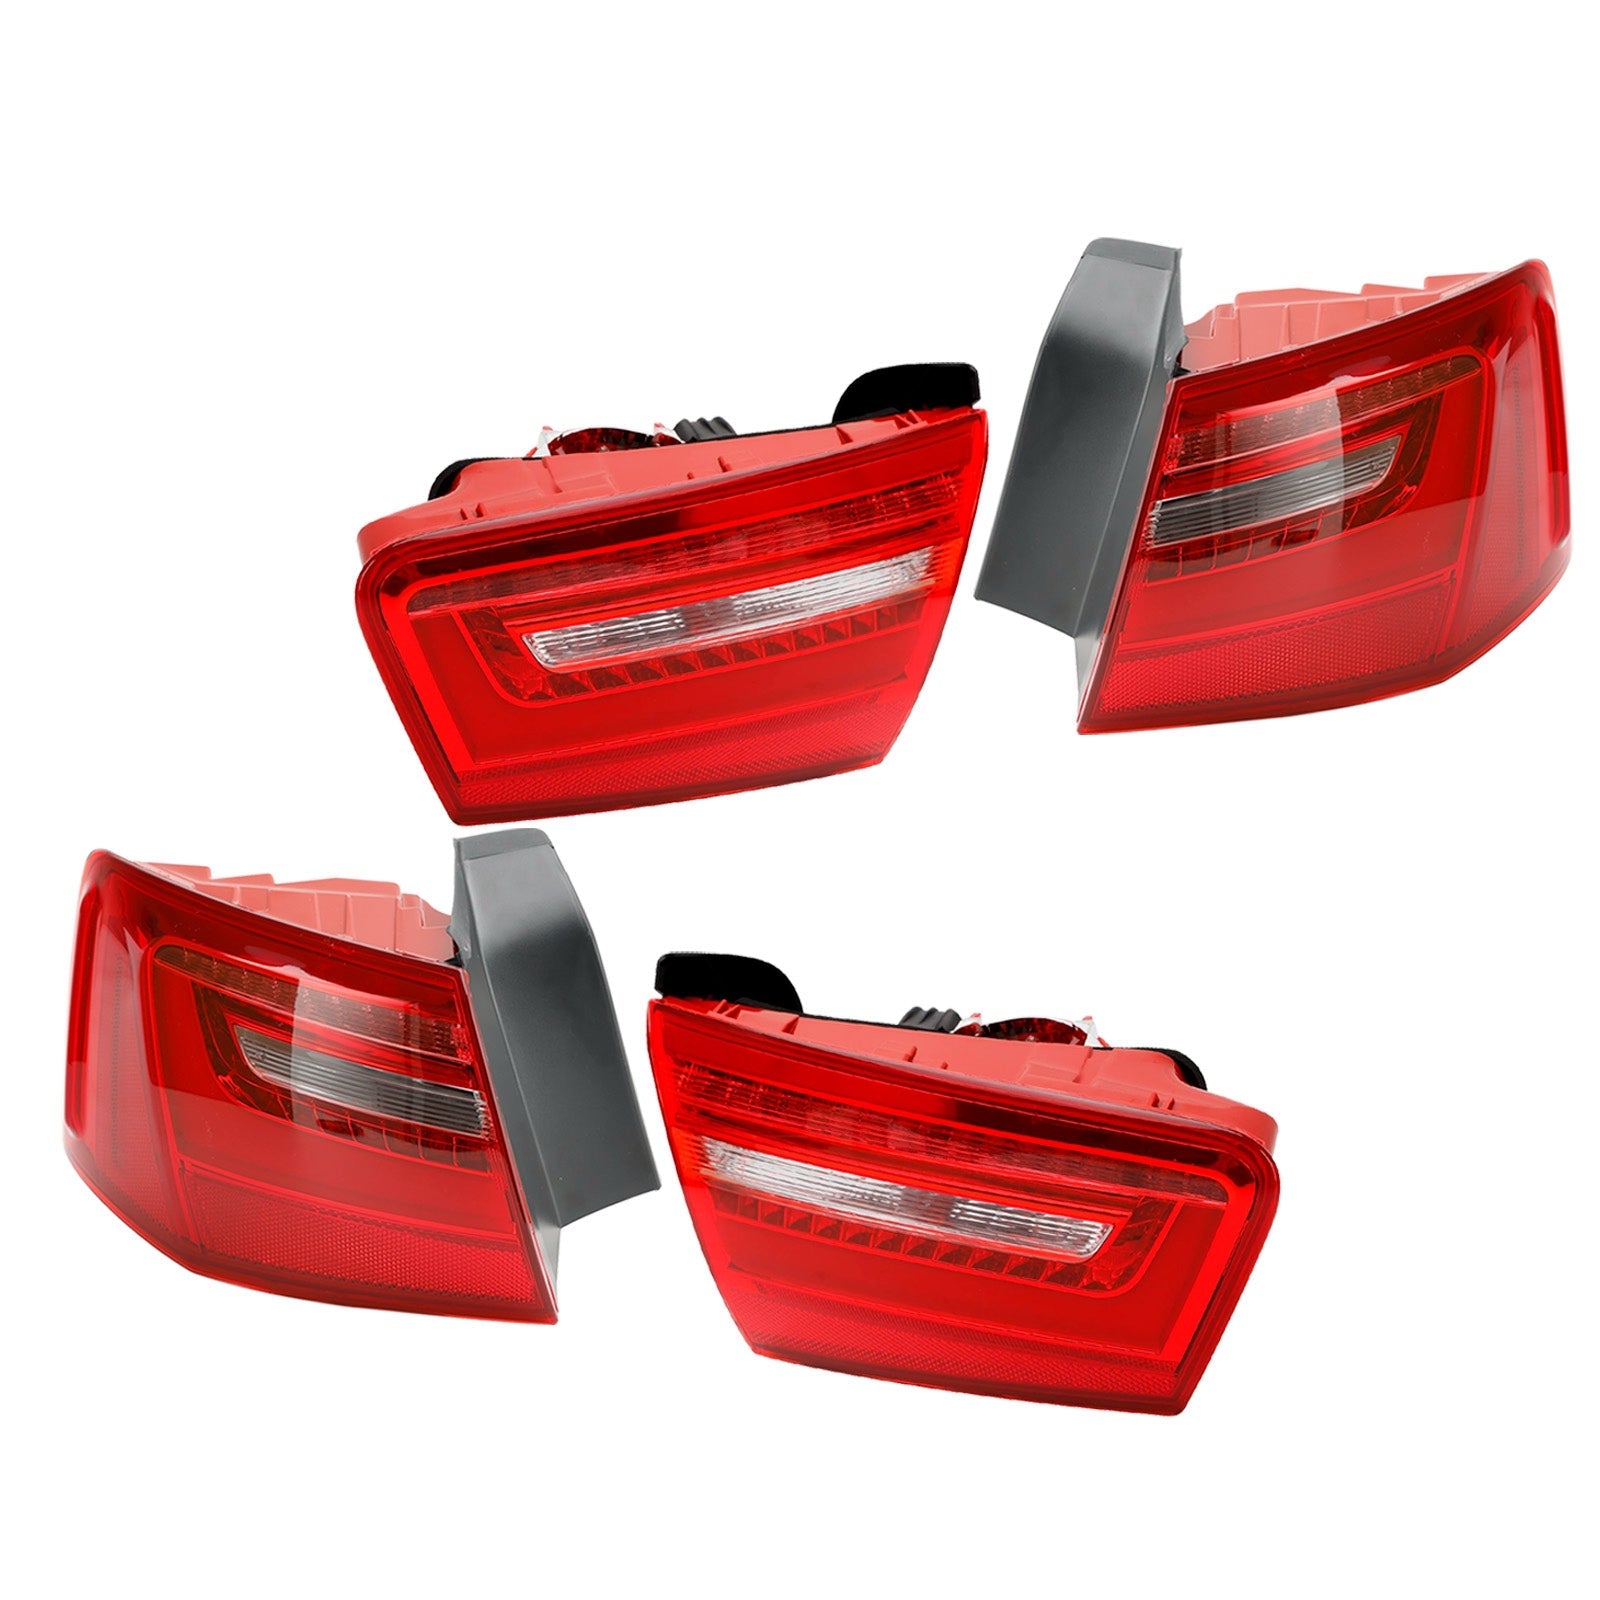 AUDI A6 2012-2015 Auto 4 pezzi Interni Esterni Fanale posteriore LED Luce freno